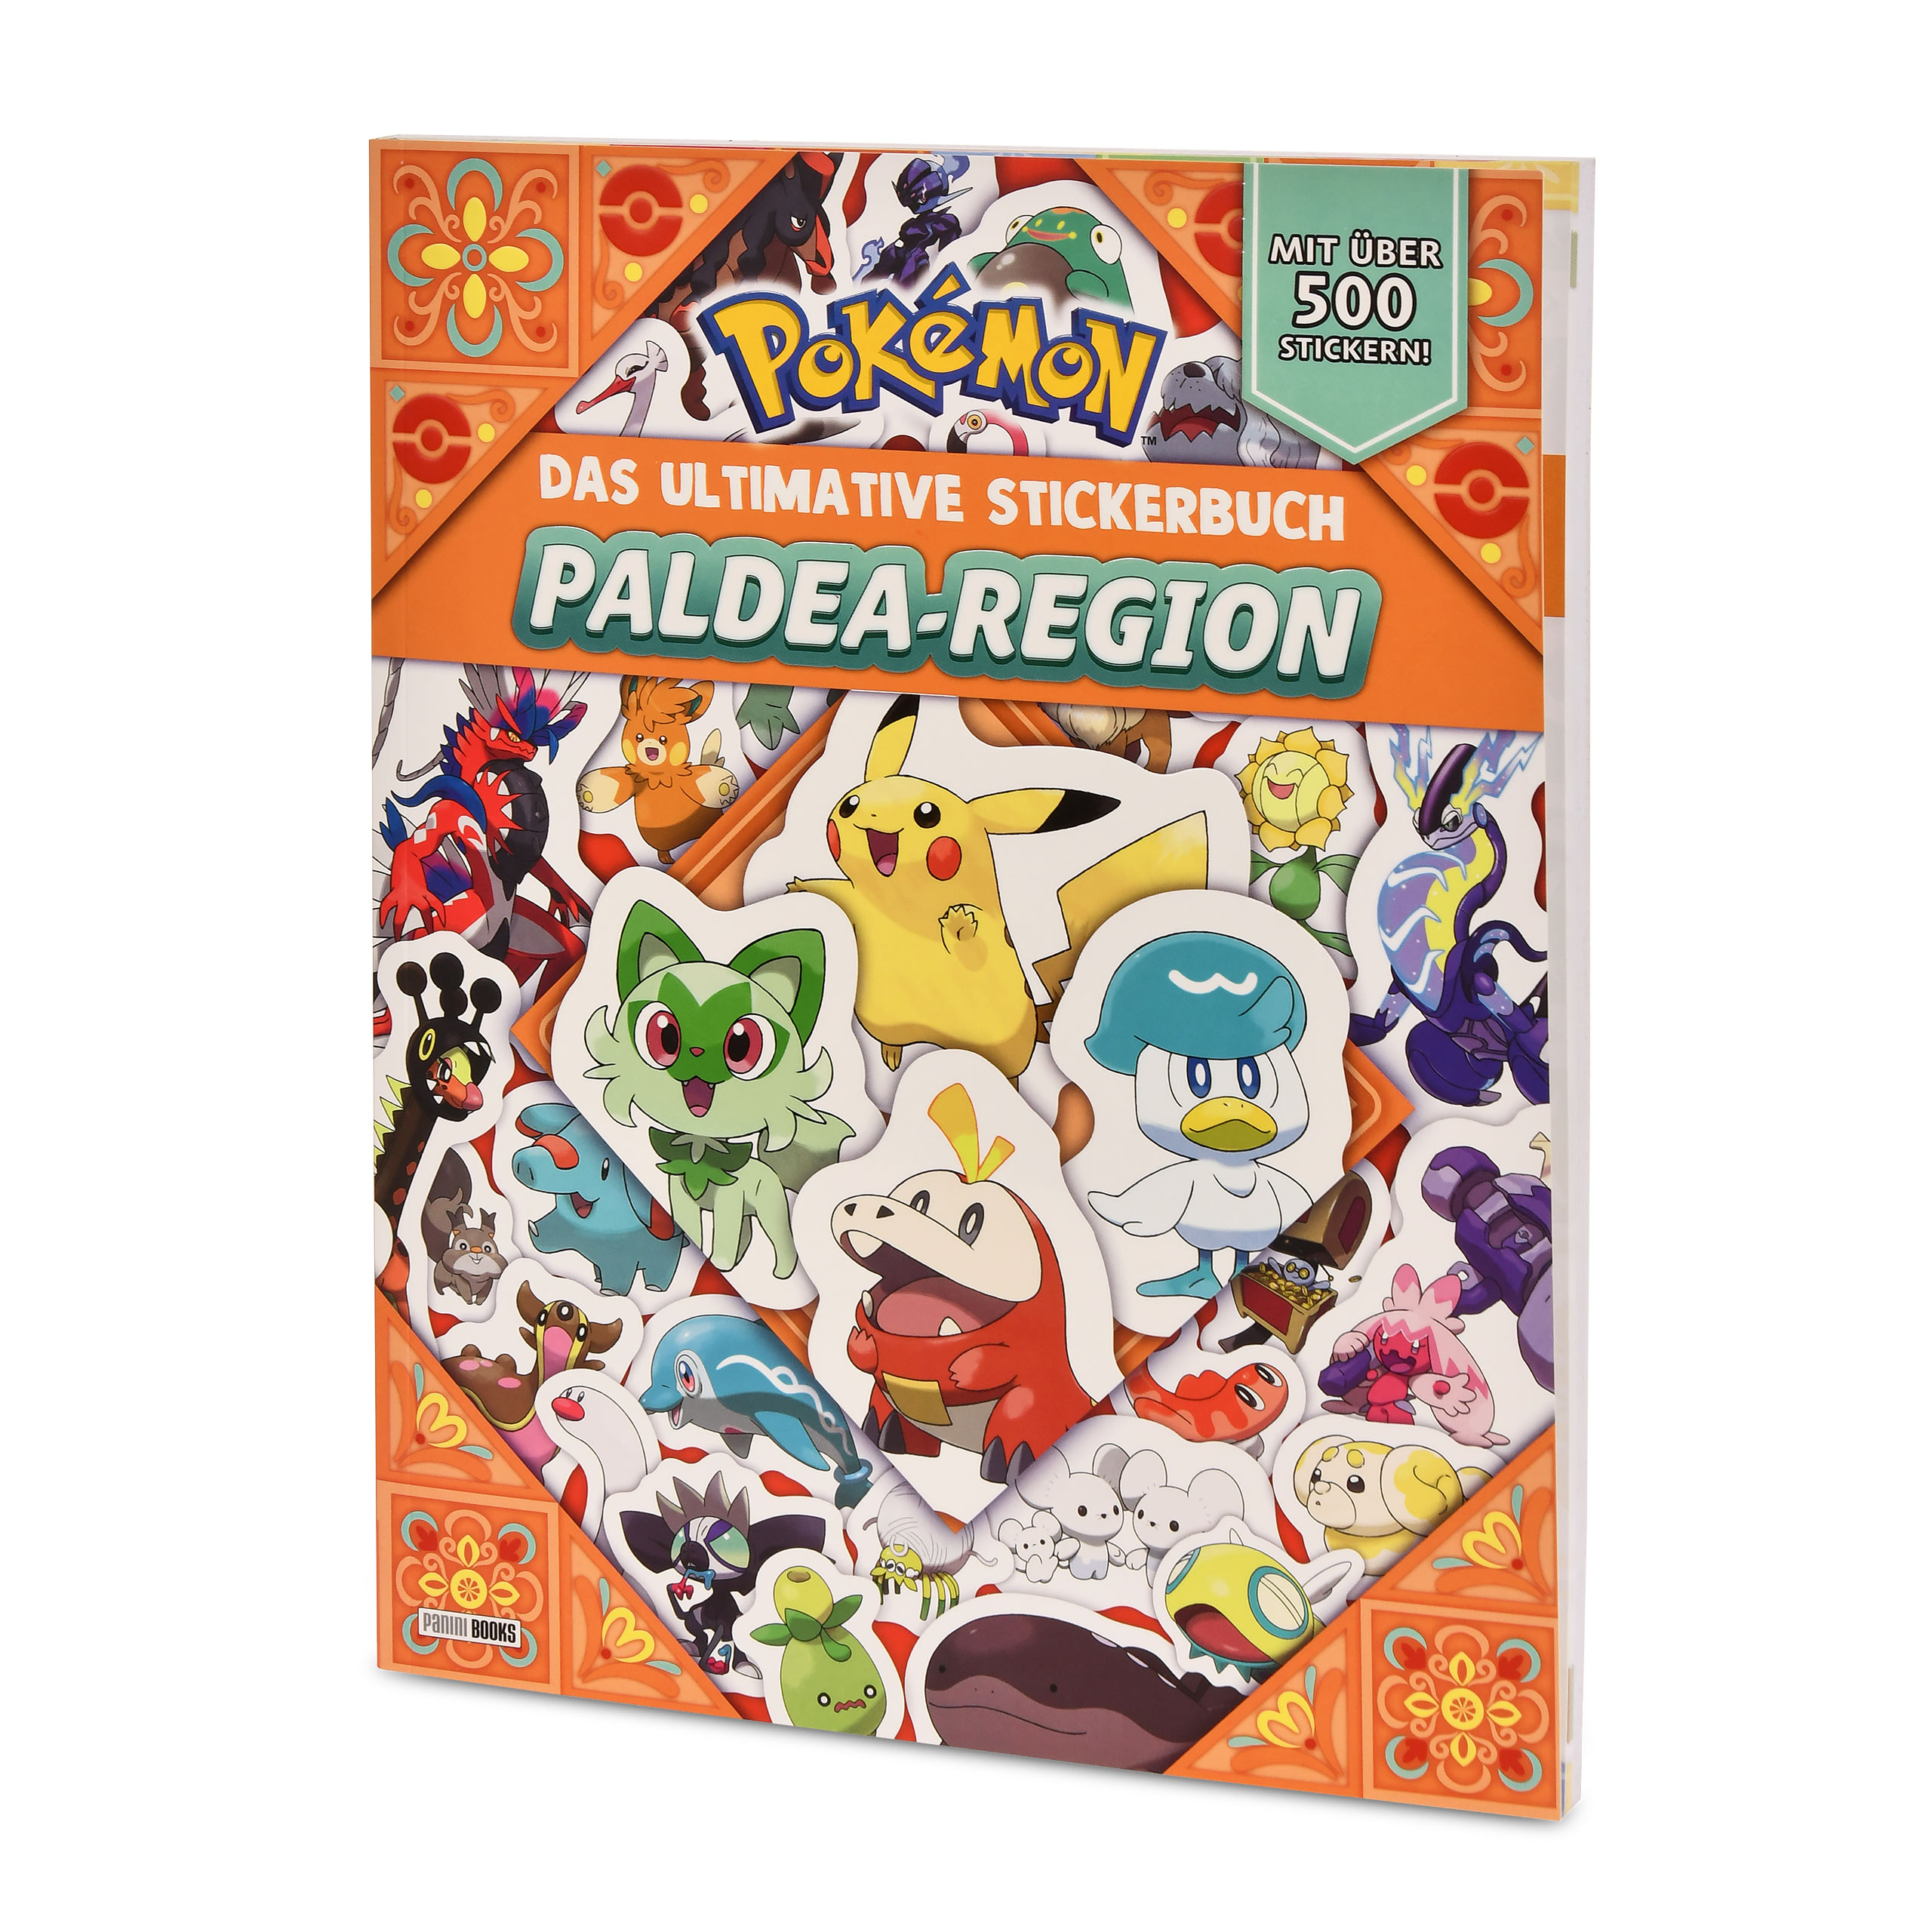 Pokemon - Das ultimative Stickerbuch der Paldea-Region